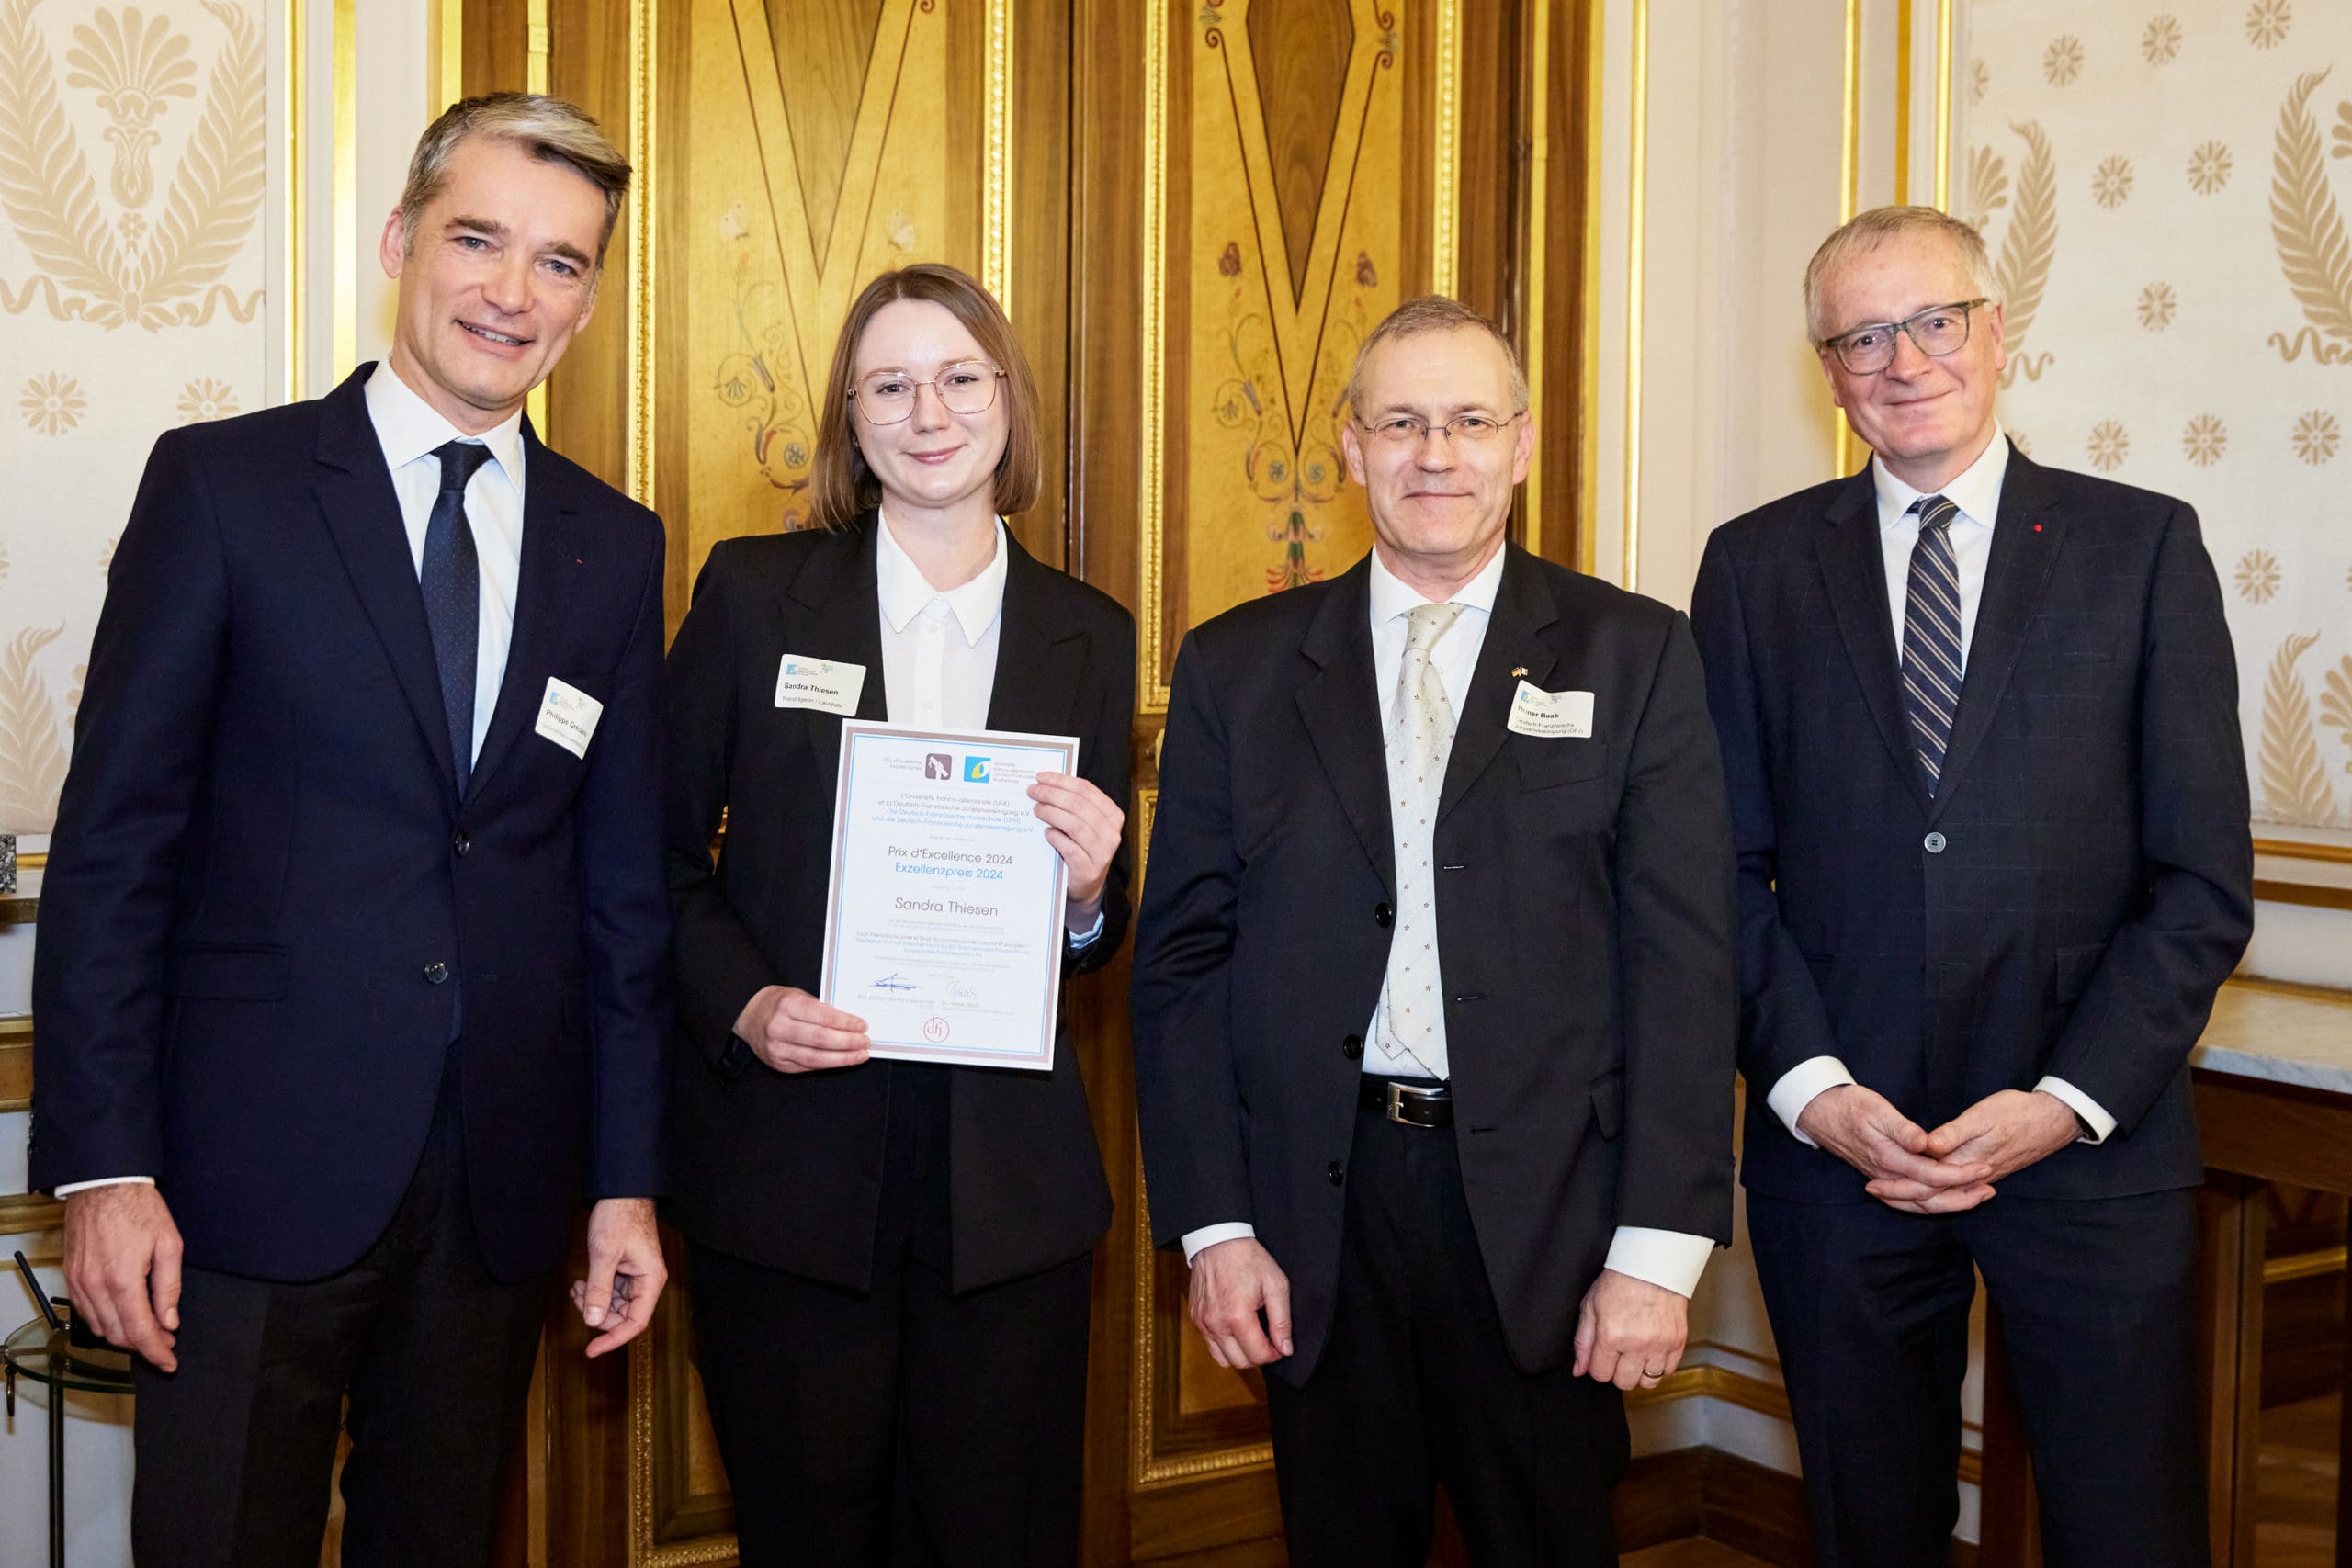 Exzellenzpreis für Sandra Thiesen aus Mainz